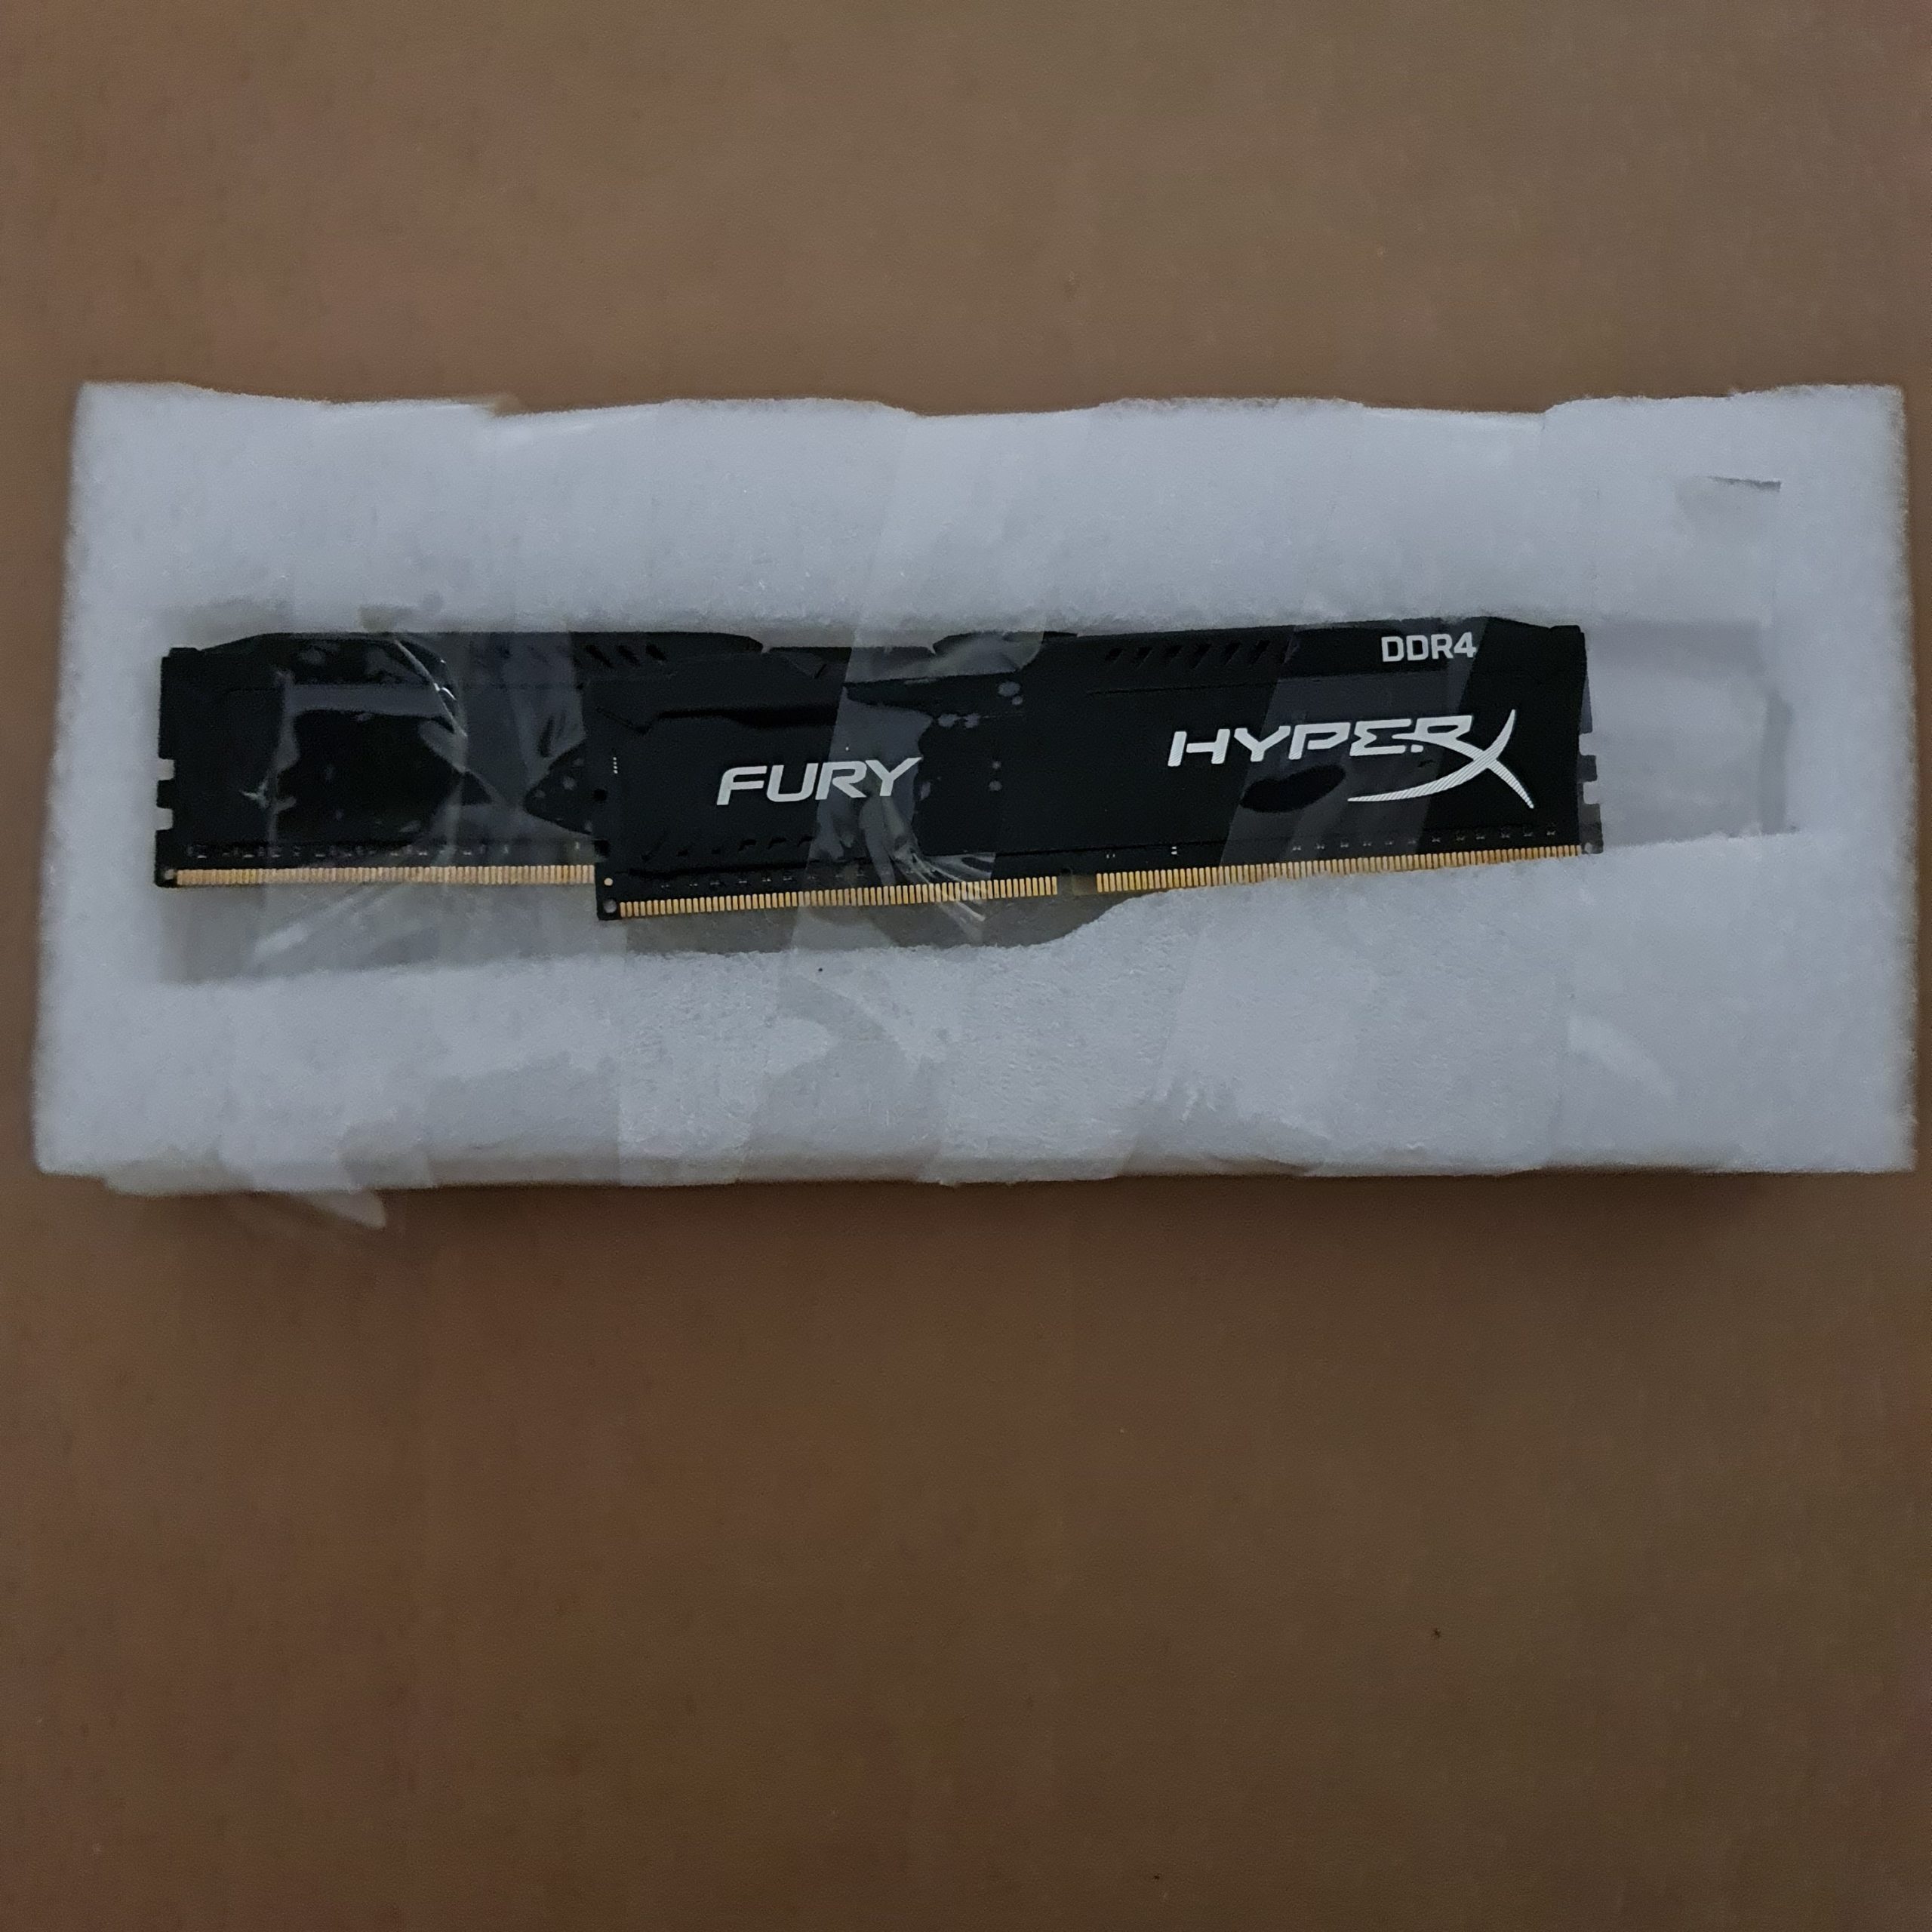 HyperX Fury 16GB (2 x 8GB) DDR4 2400 CL15 288 Pi DIMM